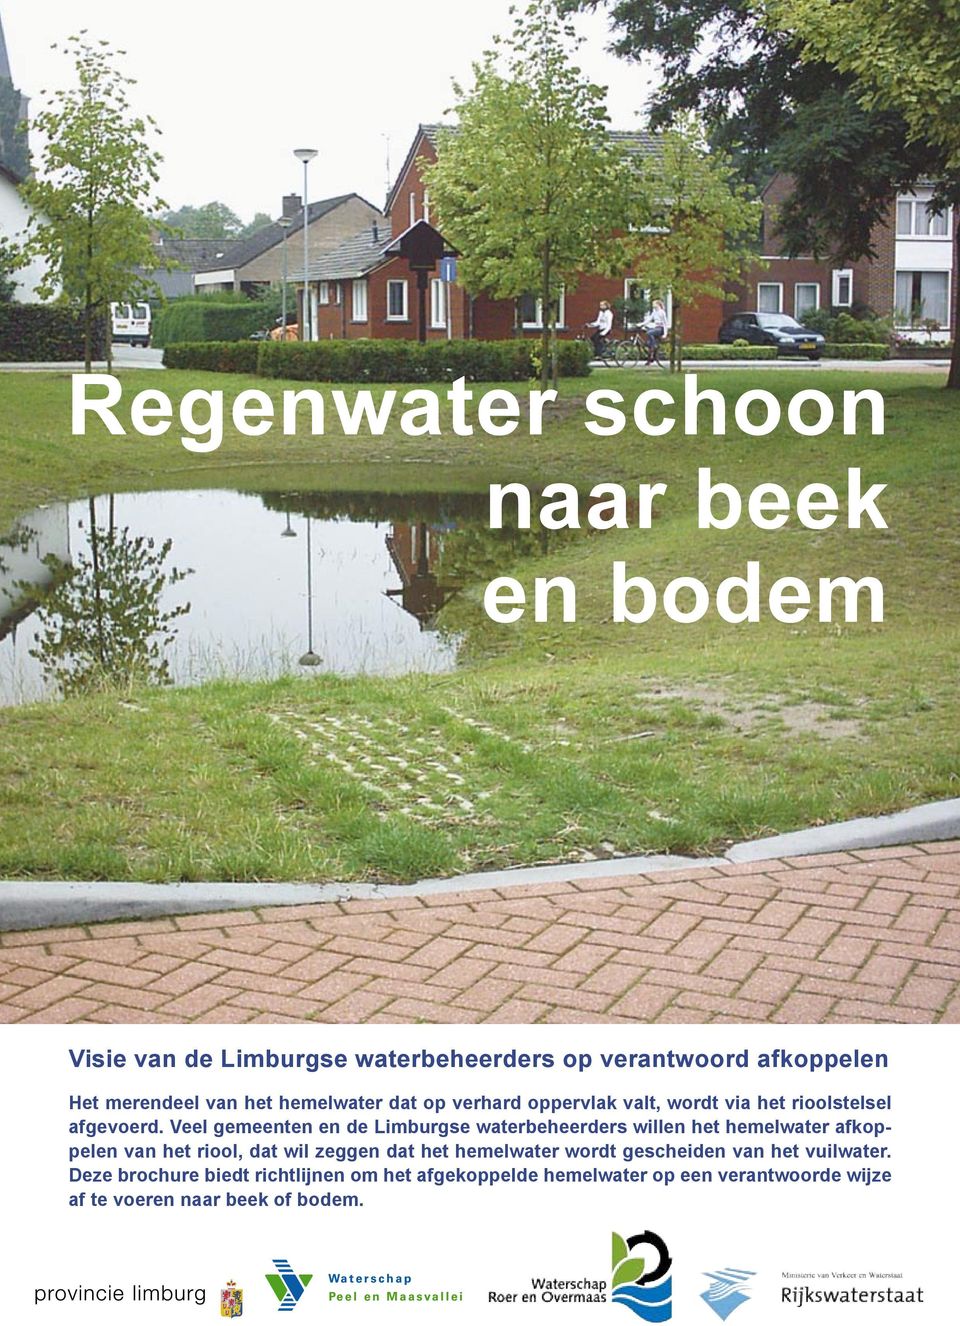 Veel gemeenten en de Limburgse waterbeheerders willen het hemelwater afkoppelen van het riool, dat wil zeggen dat het